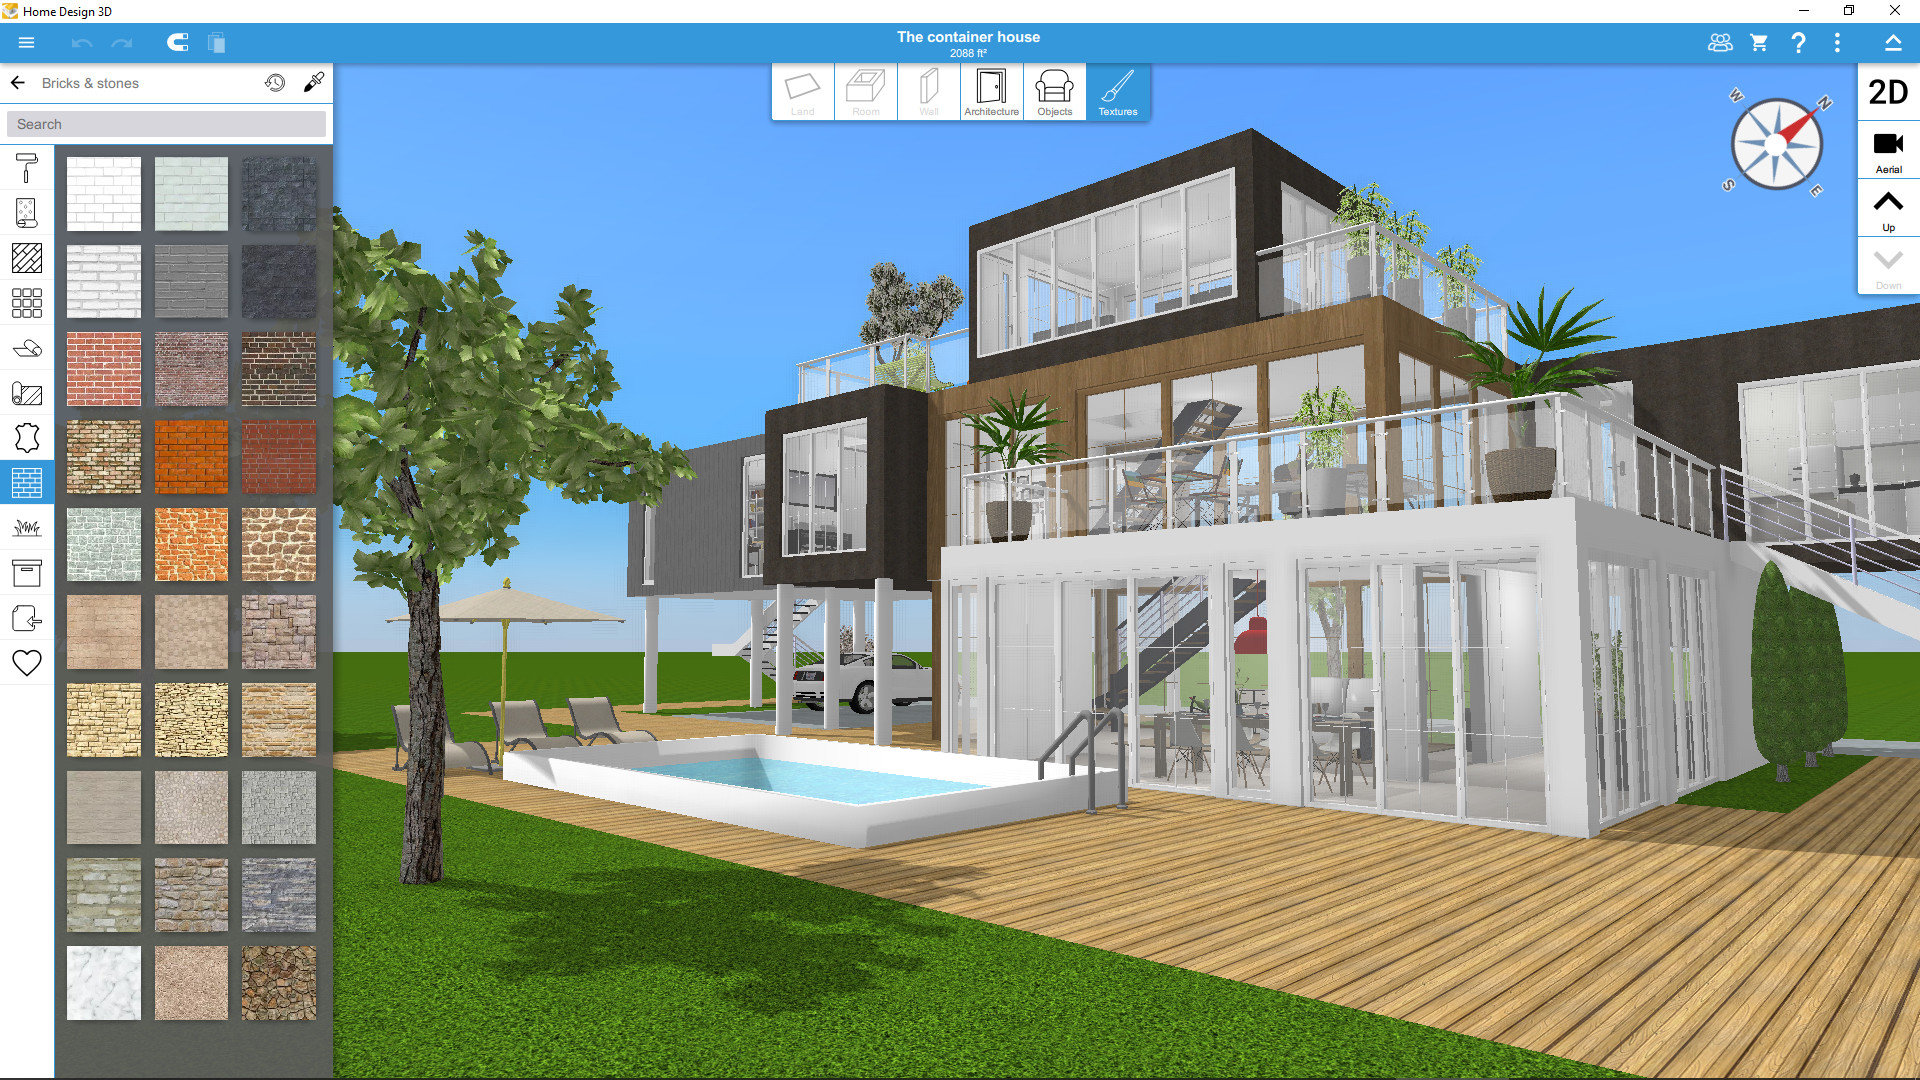 Virtual House Designing Games - Virtual house designing games on